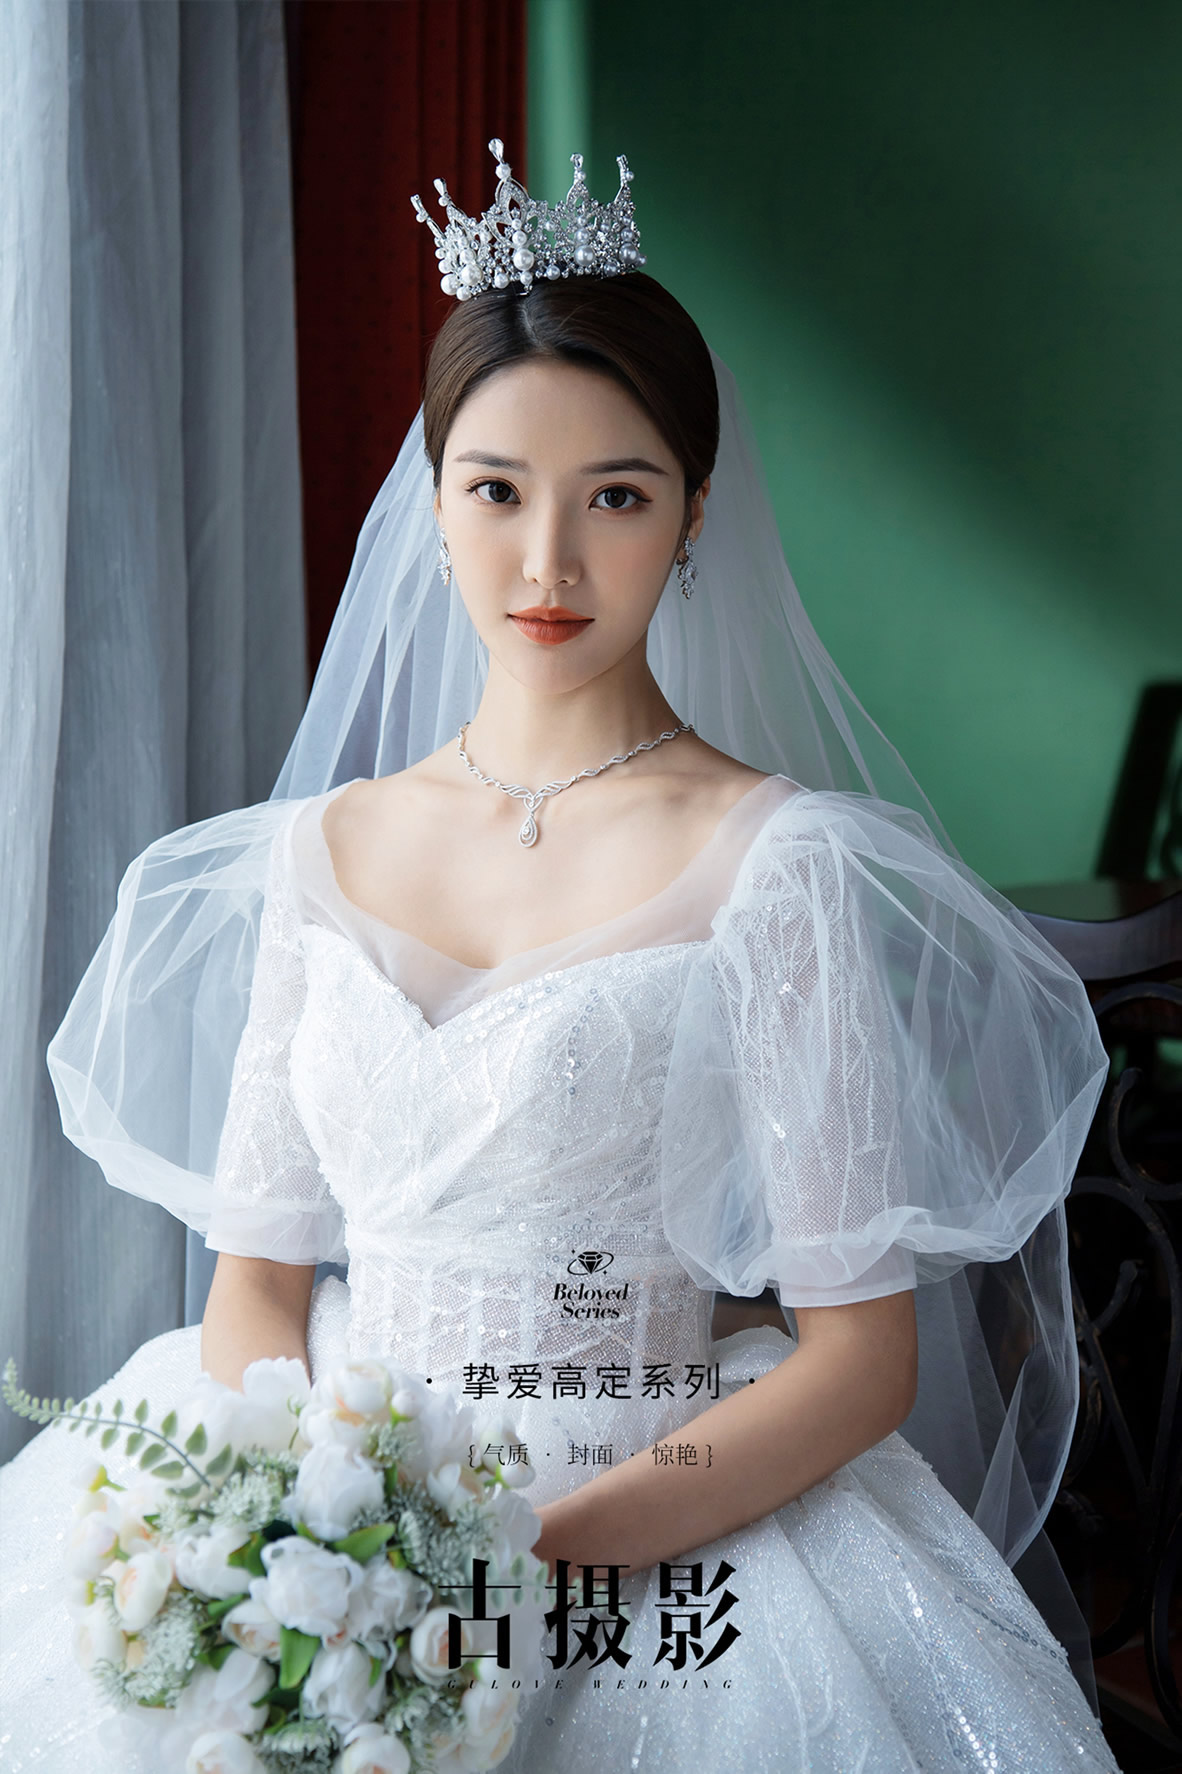 Queen-Ⅱ - 明星范 - 古摄影婚纱艺术-古摄影成都婚纱摄影艺术摄影网